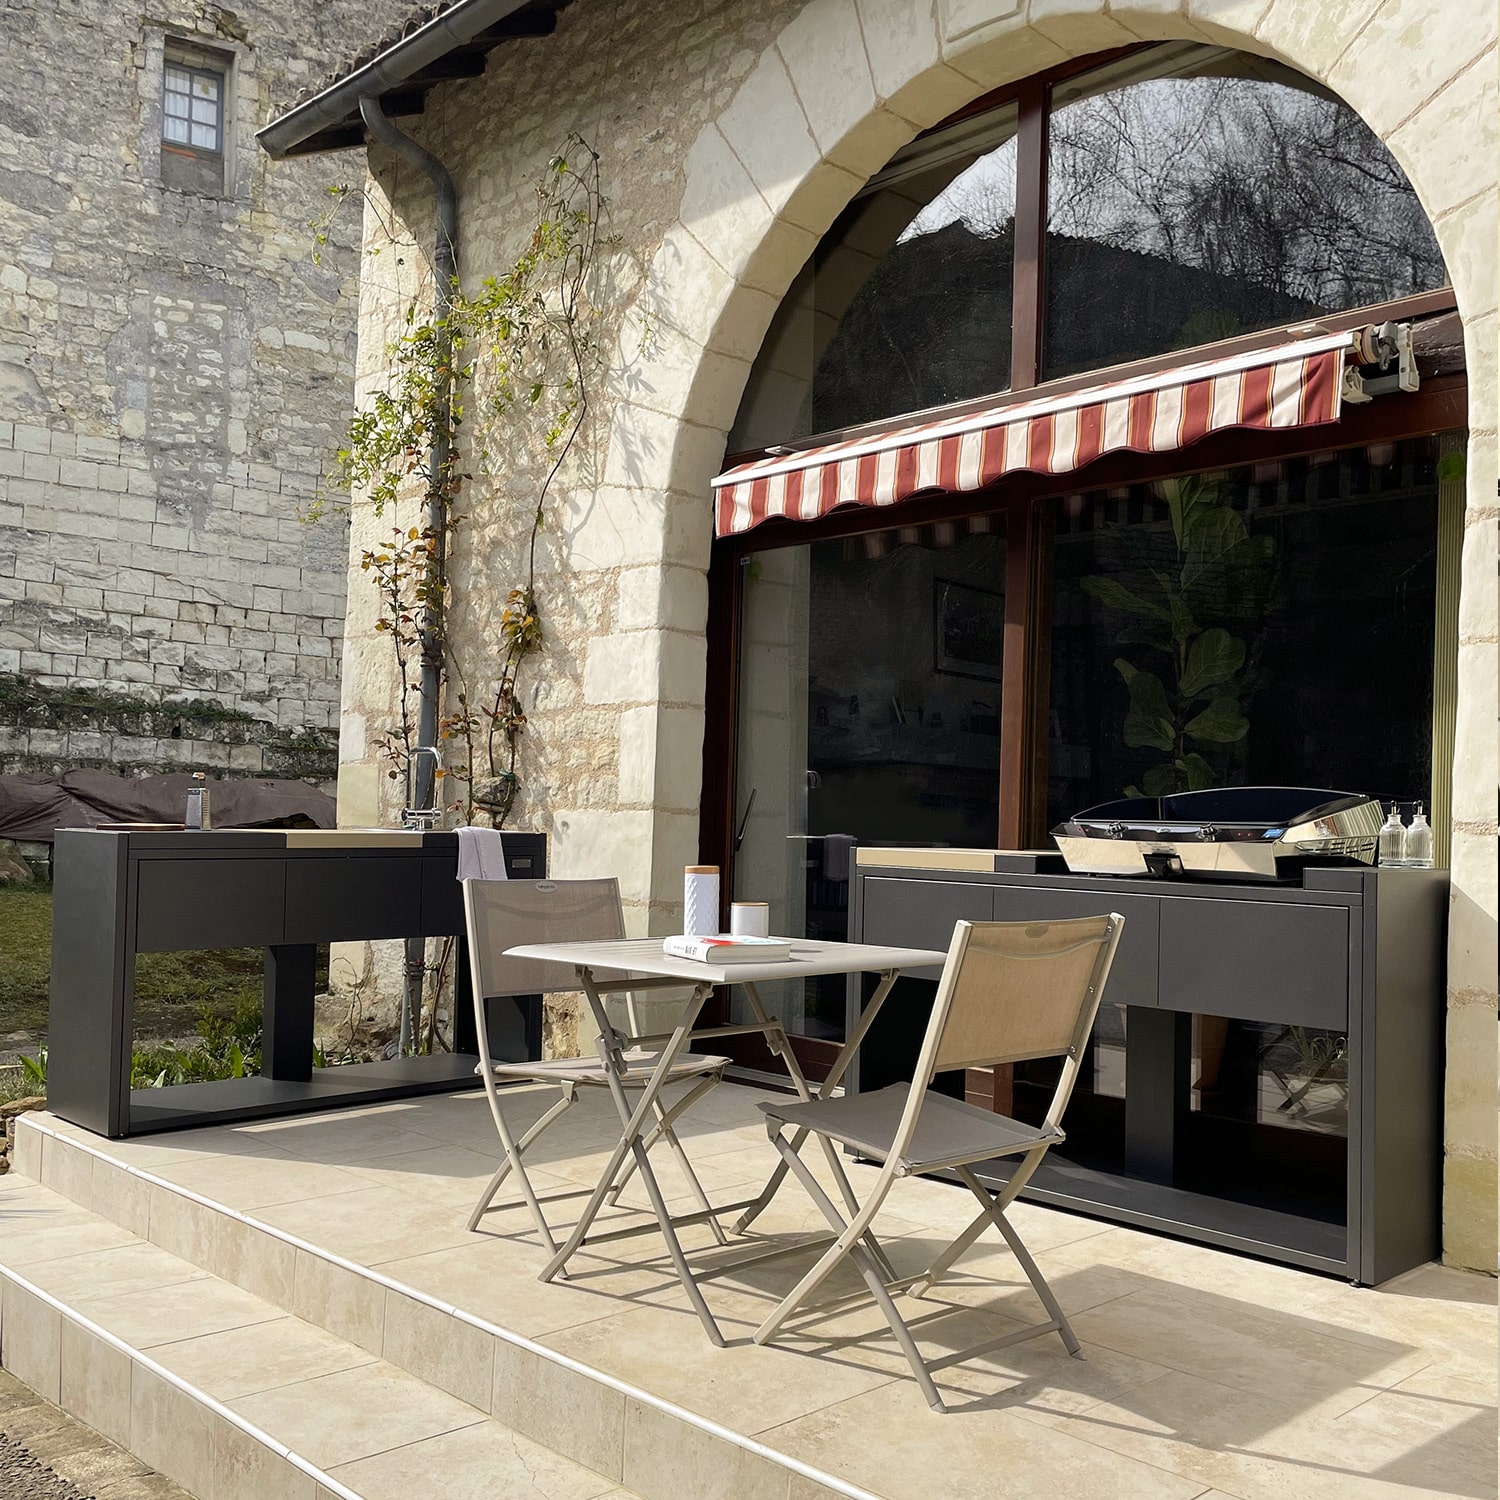 Deux modules de cuisine d'extérieur Soleil Carré avec une plancha sur une terrasse. Disponible chez Inox Passion